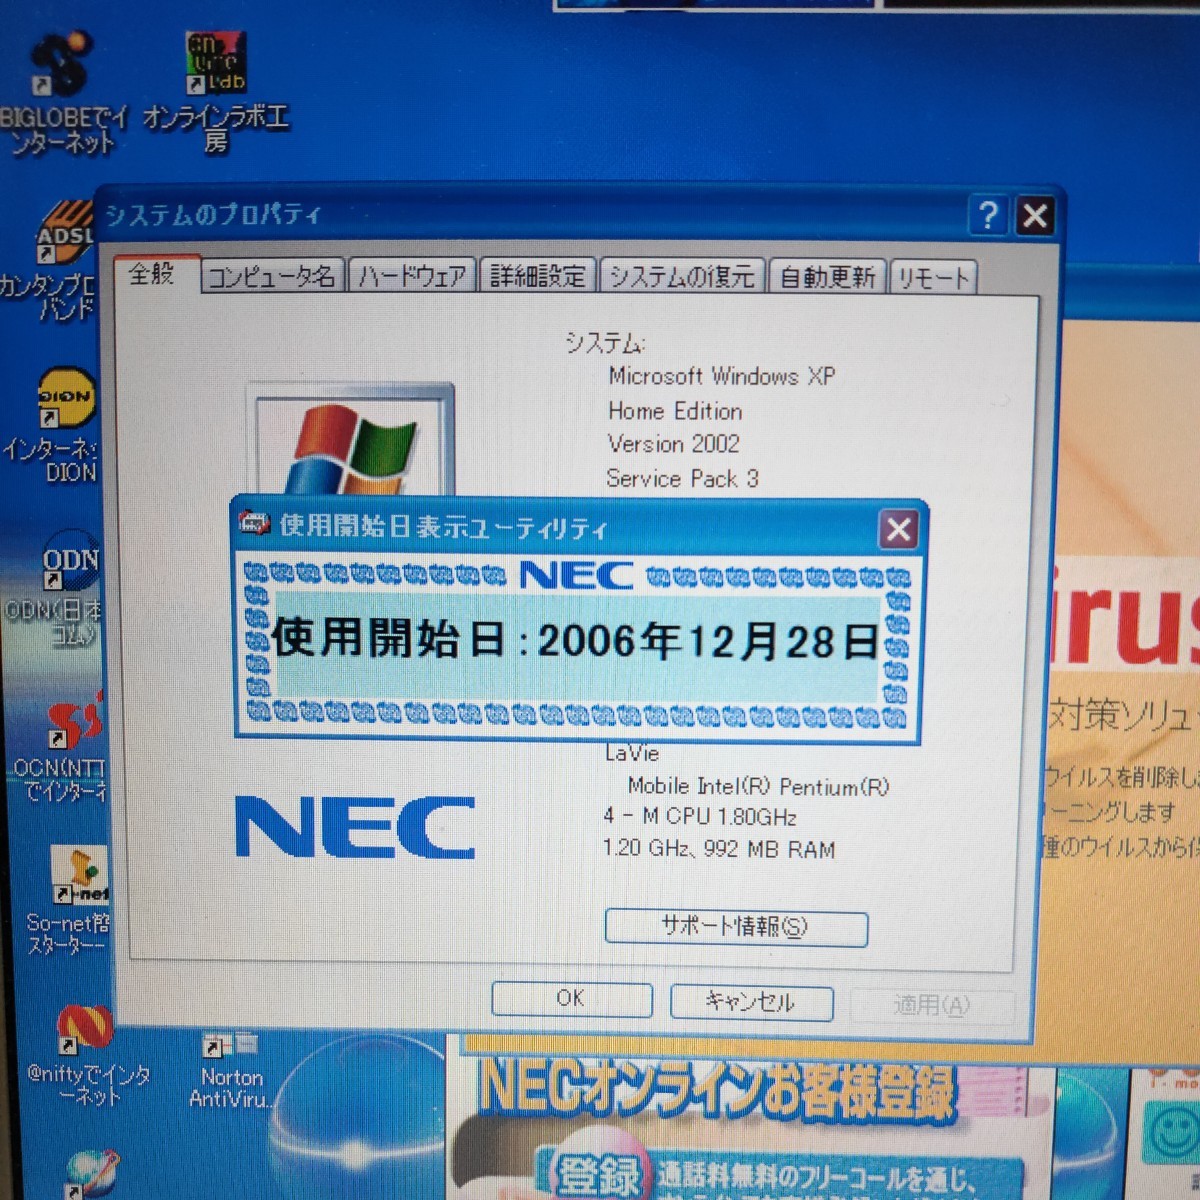 NEC LaVie PC-LL7305D WindowsXP SP3 リカバリ済 Pentium4-M 1.8Ghz換装済 1GB 40GB 元箱 付属品あり DVD CD PCカード RS232C ATI FDD_画像2